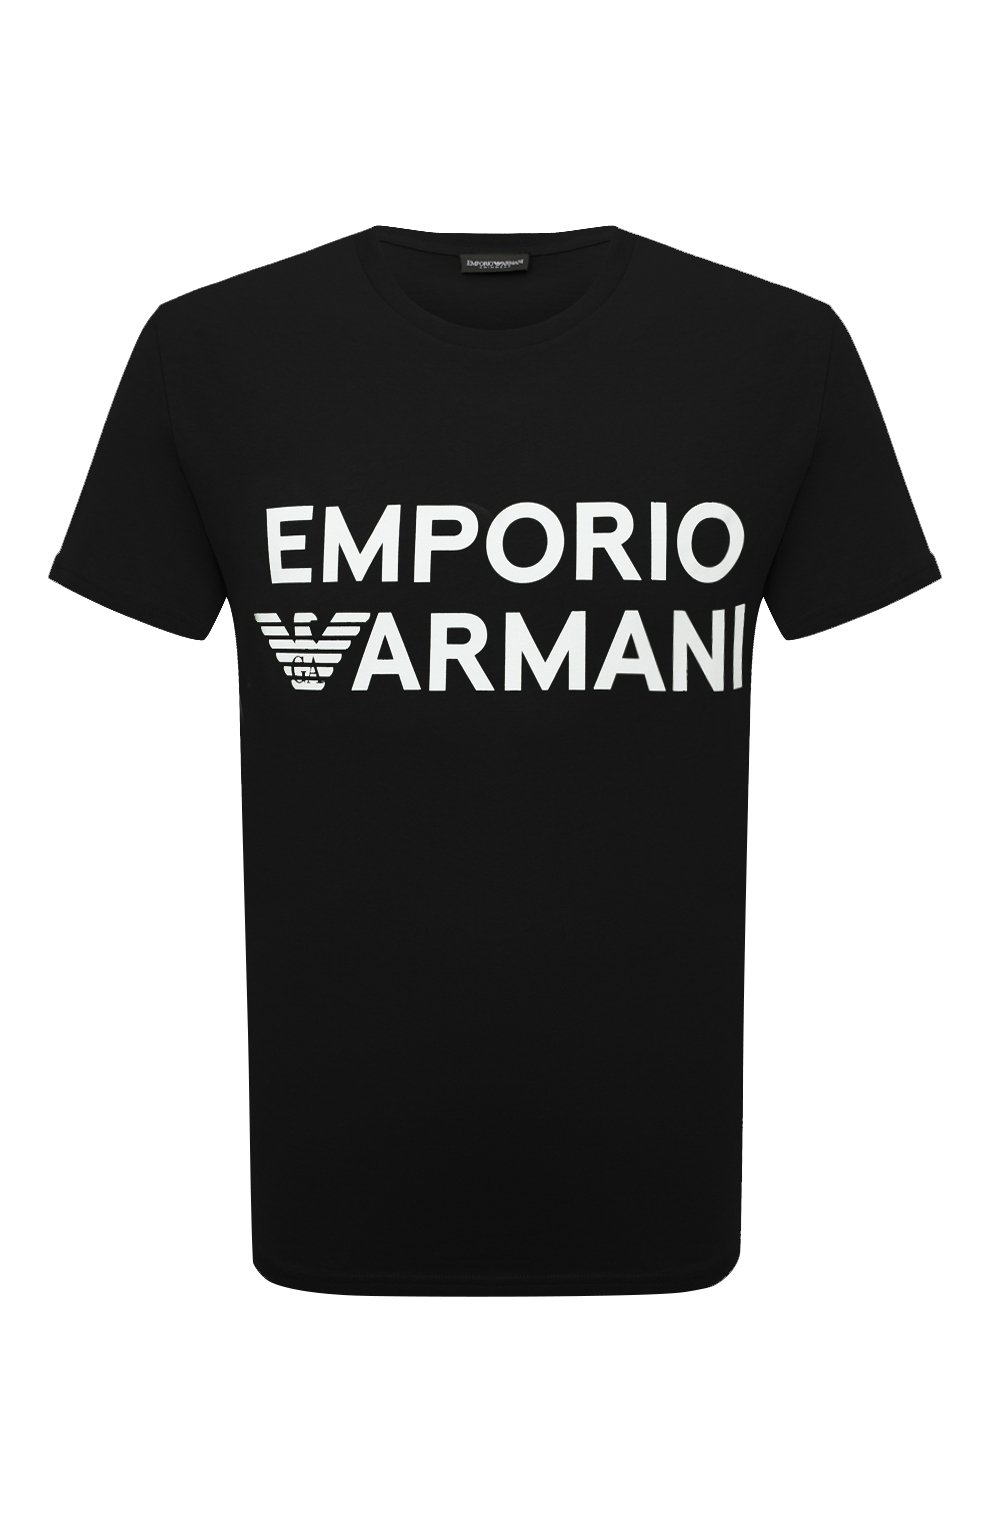 Футболки Emporio Armani, Хлопковая футболка Emporio Armani, Турция, Чёрный, Хлопок: 100%;, 13155321  - купить